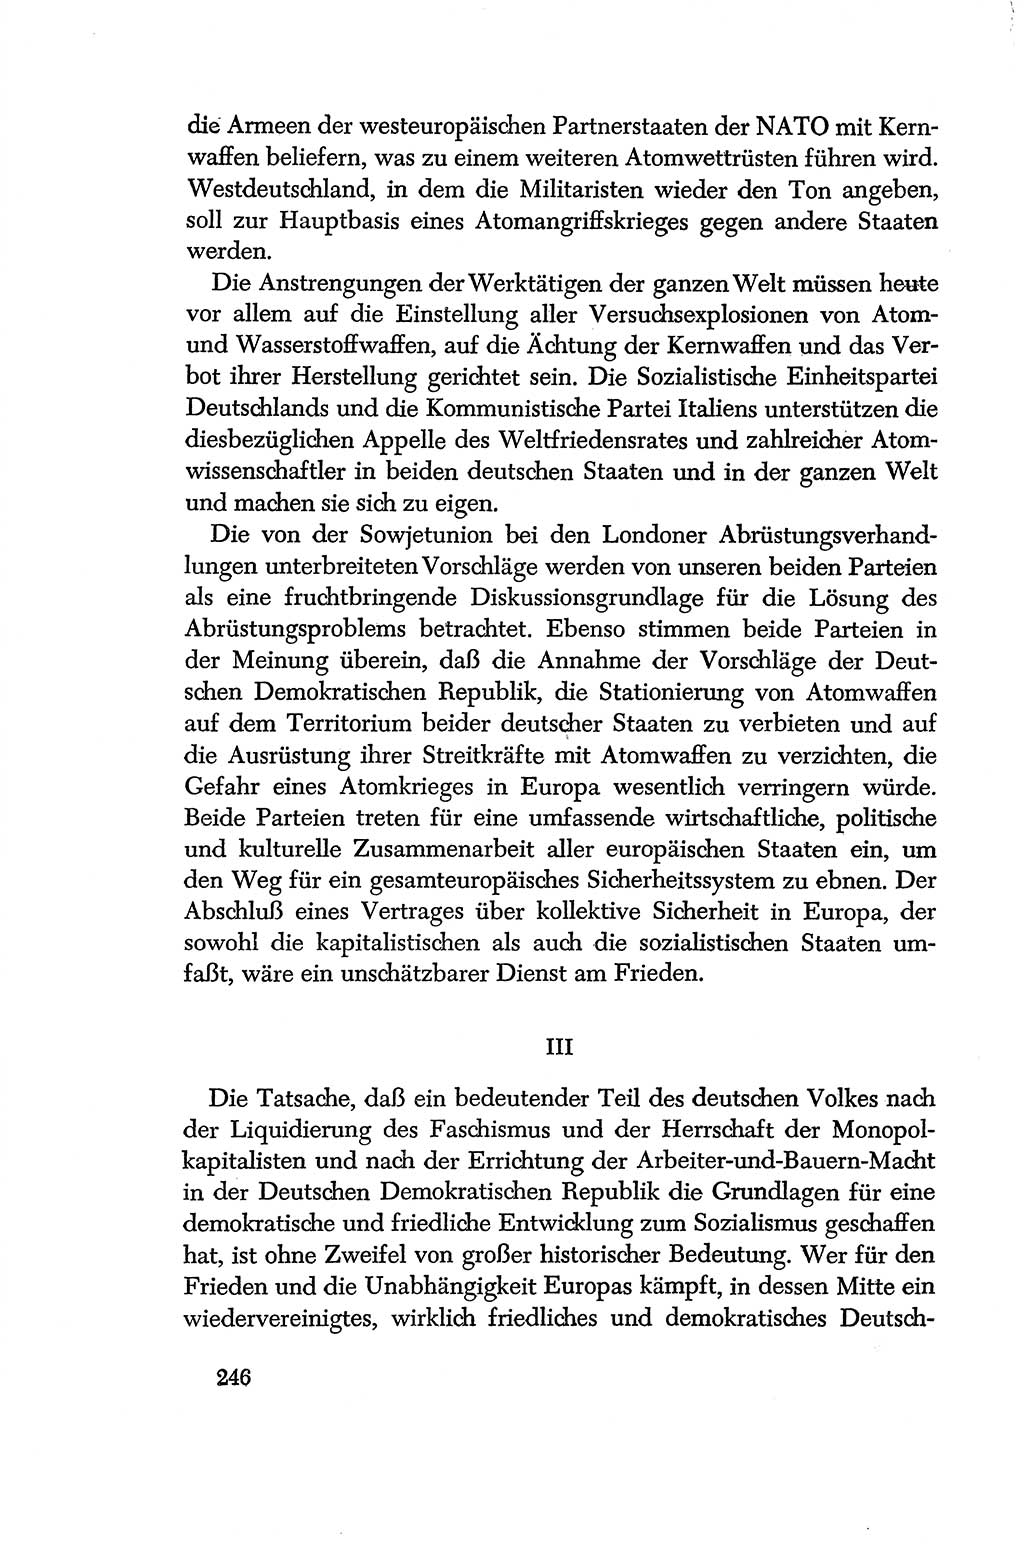 Dokumente der Sozialistischen Einheitspartei Deutschlands (SED) [Deutsche Demokratische Republik (DDR)] 1956-1957, Seite 246 (Dok. SED DDR 1956-1957, S. 246)